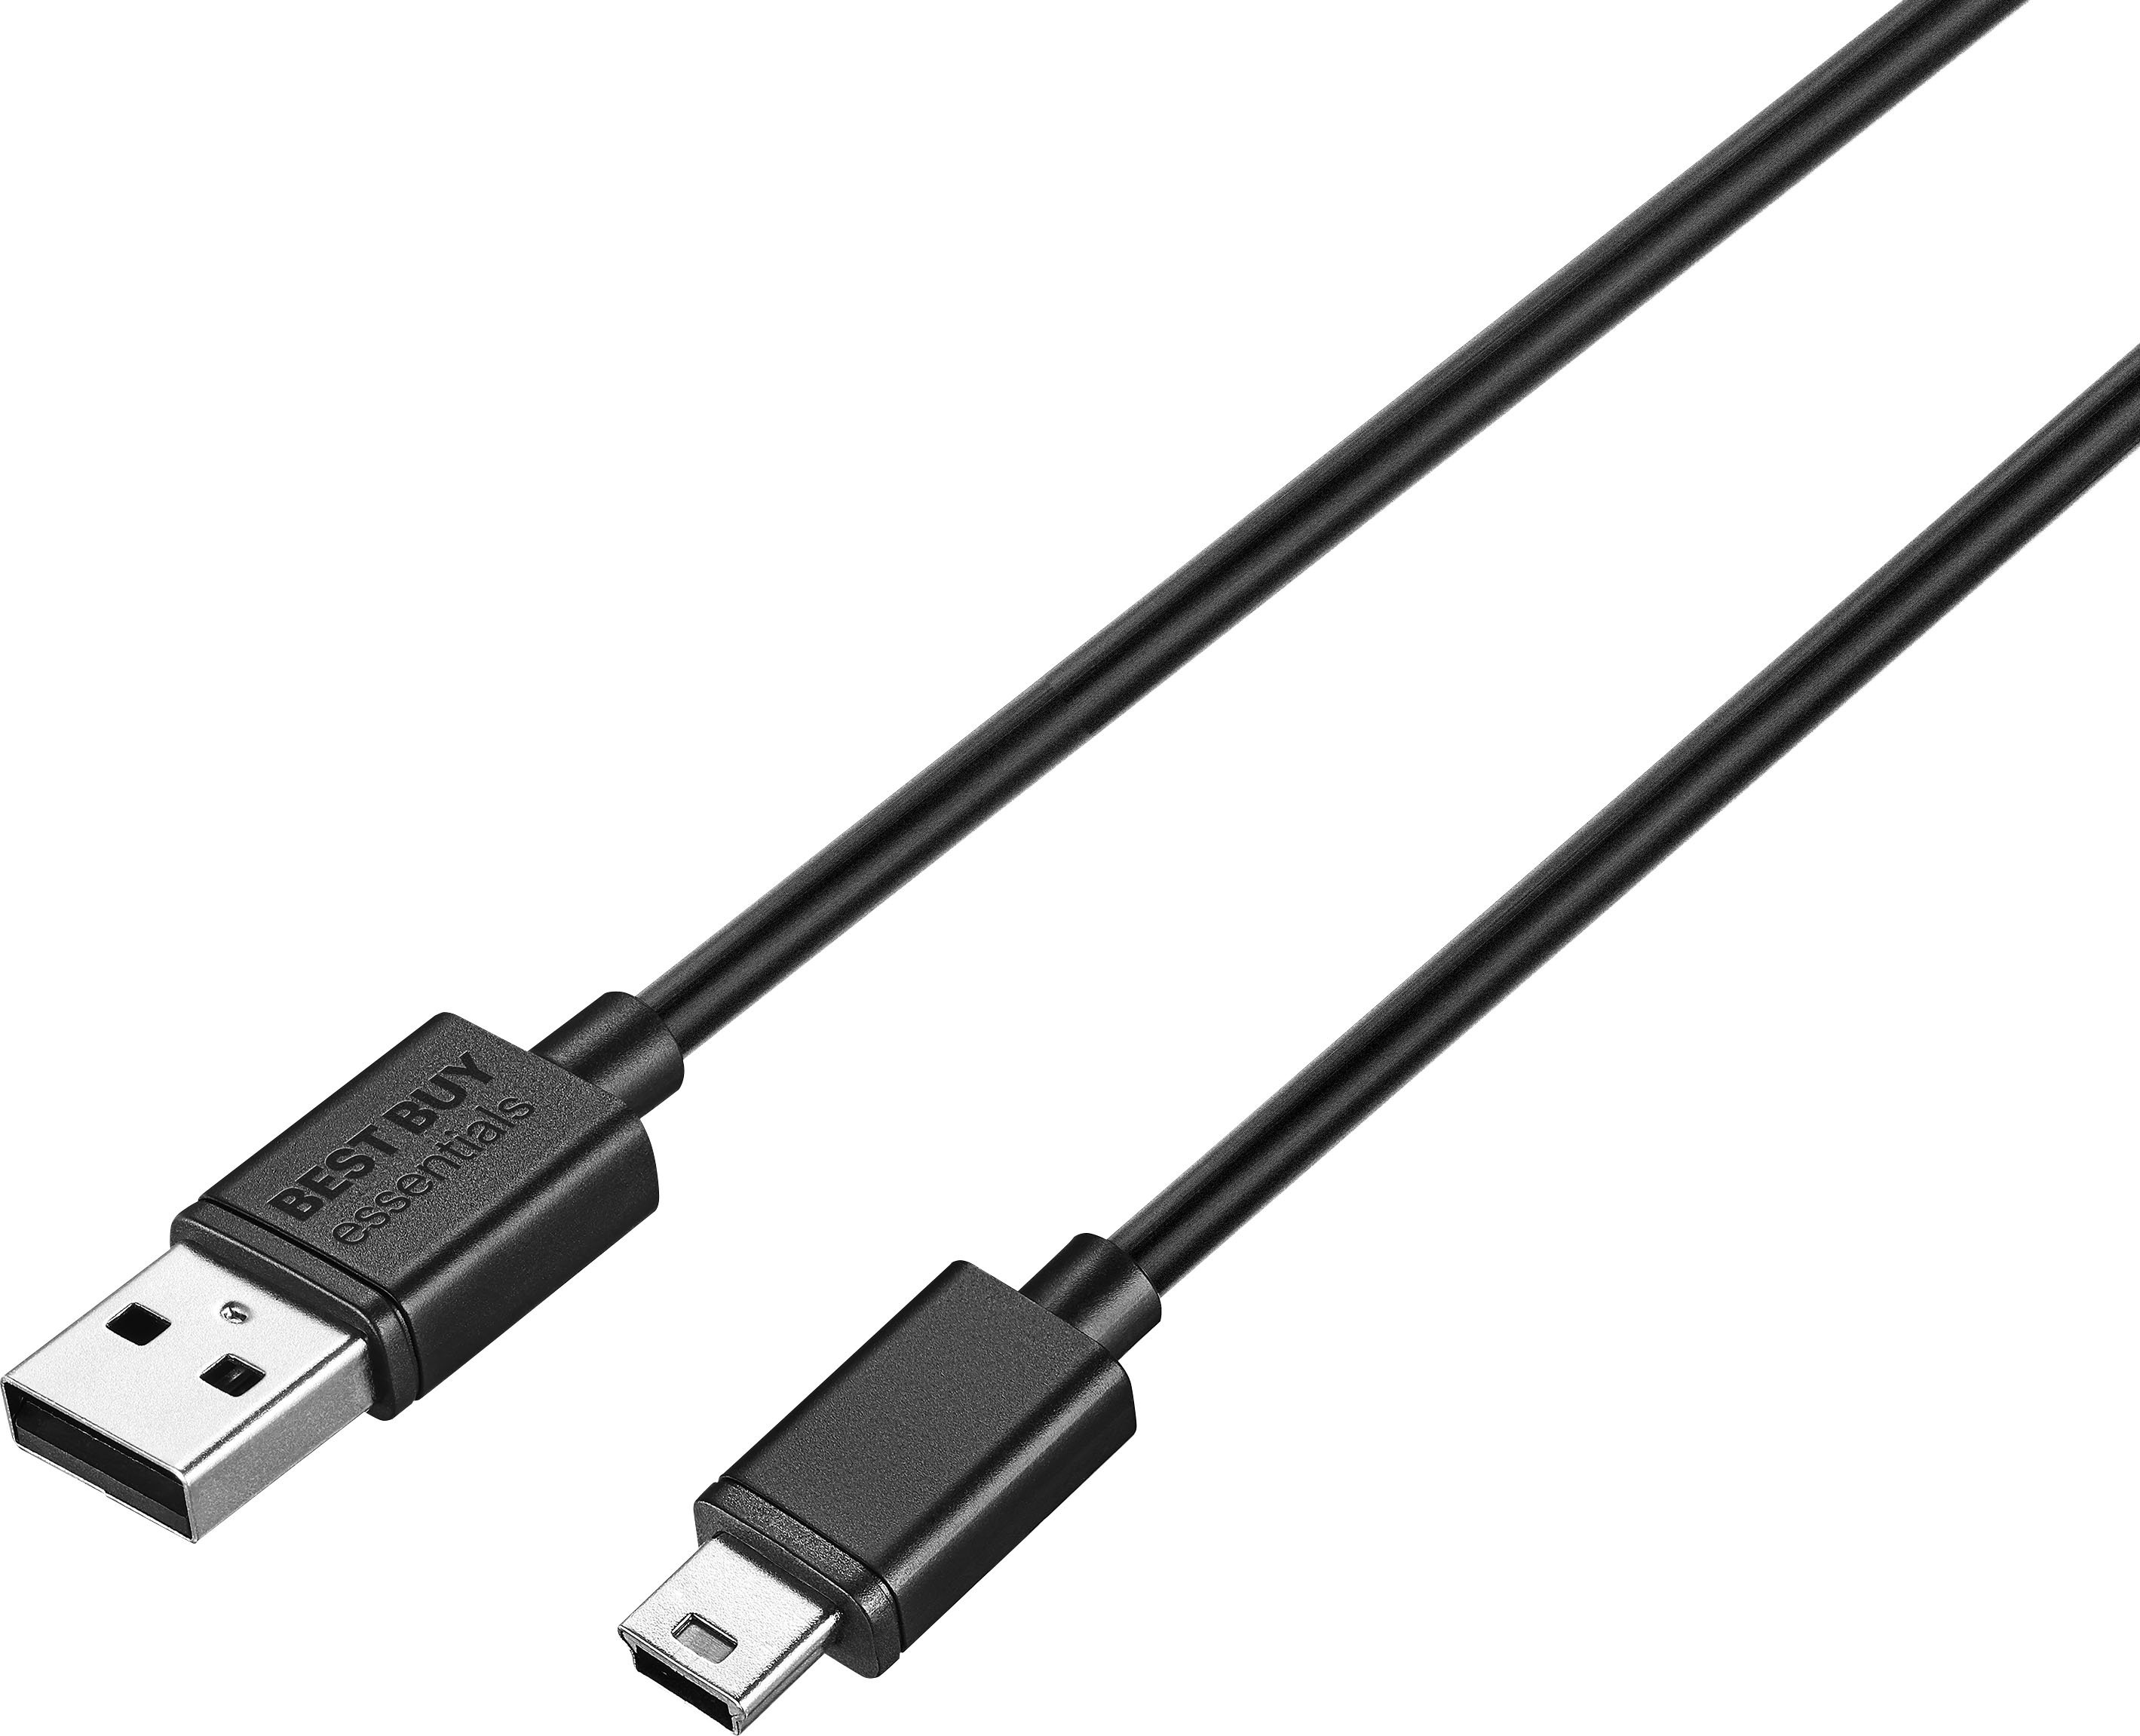 Usb 3.0 cable plastic black mini usb male a to micro b data cables cord lea VGC 